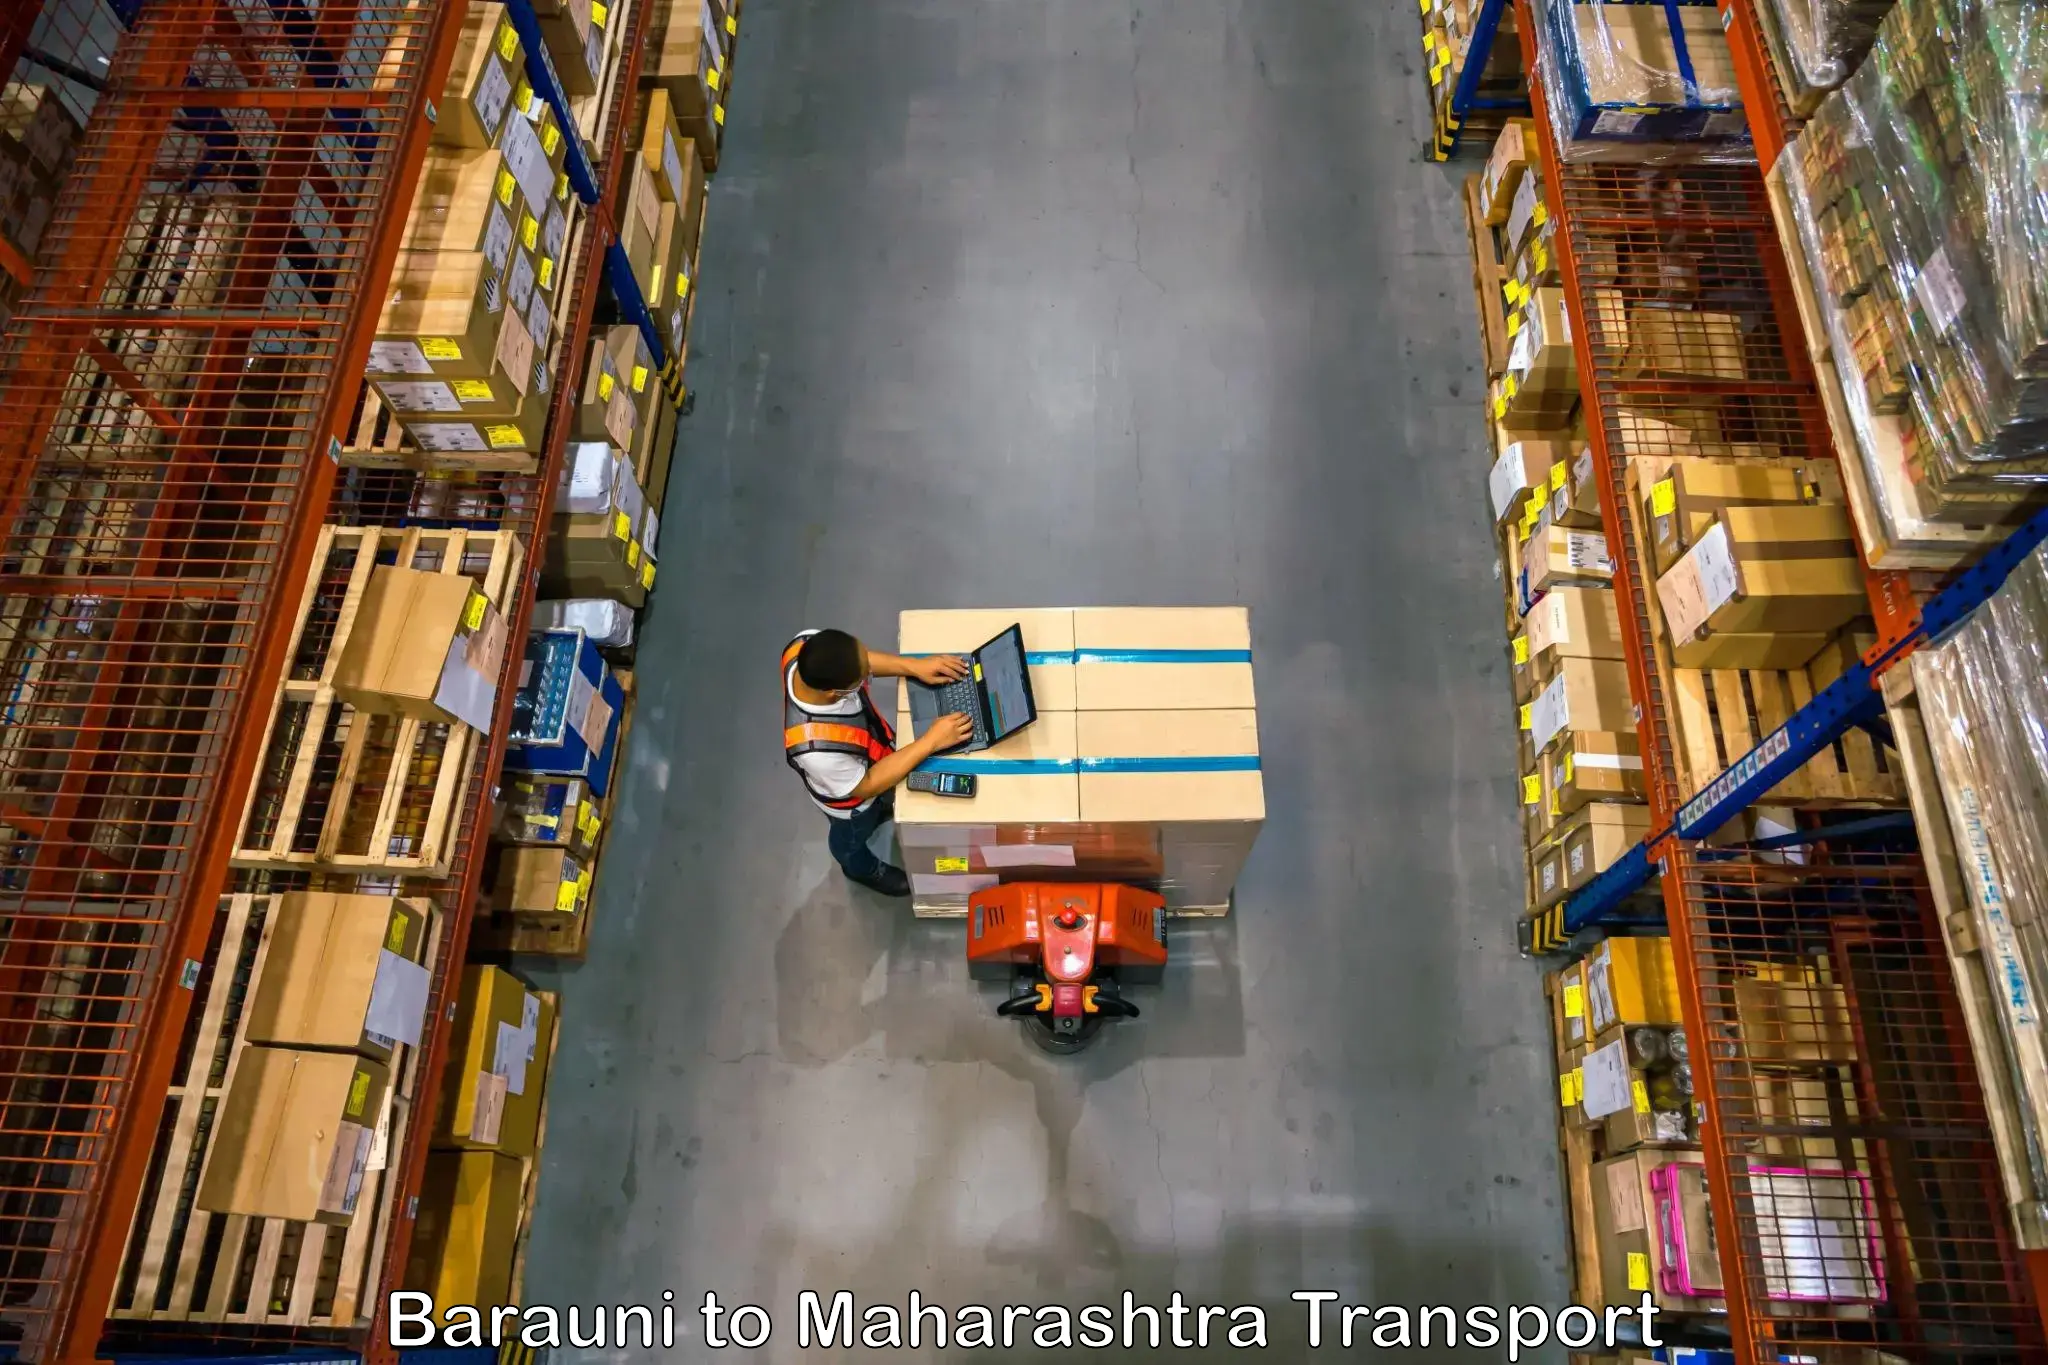 Lorry transport service Barauni to Maharashtra